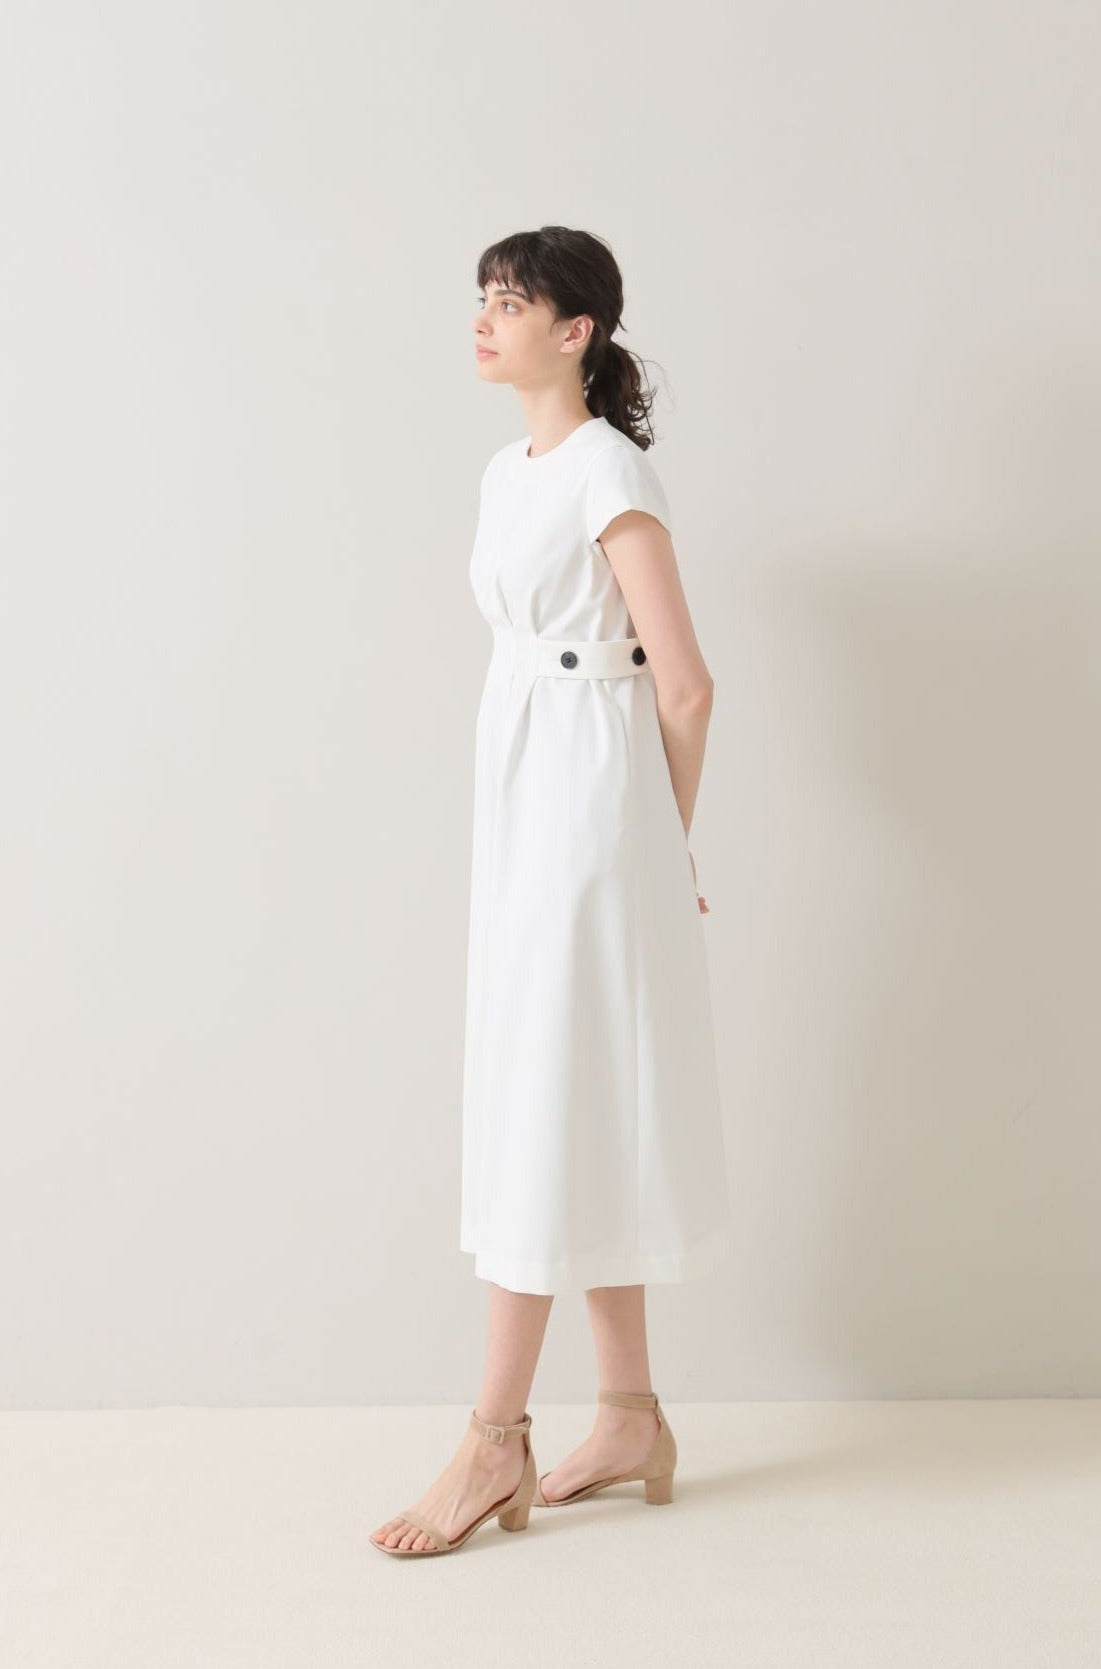 特別価格audire Waist tuck dress(White)S size ワンピース